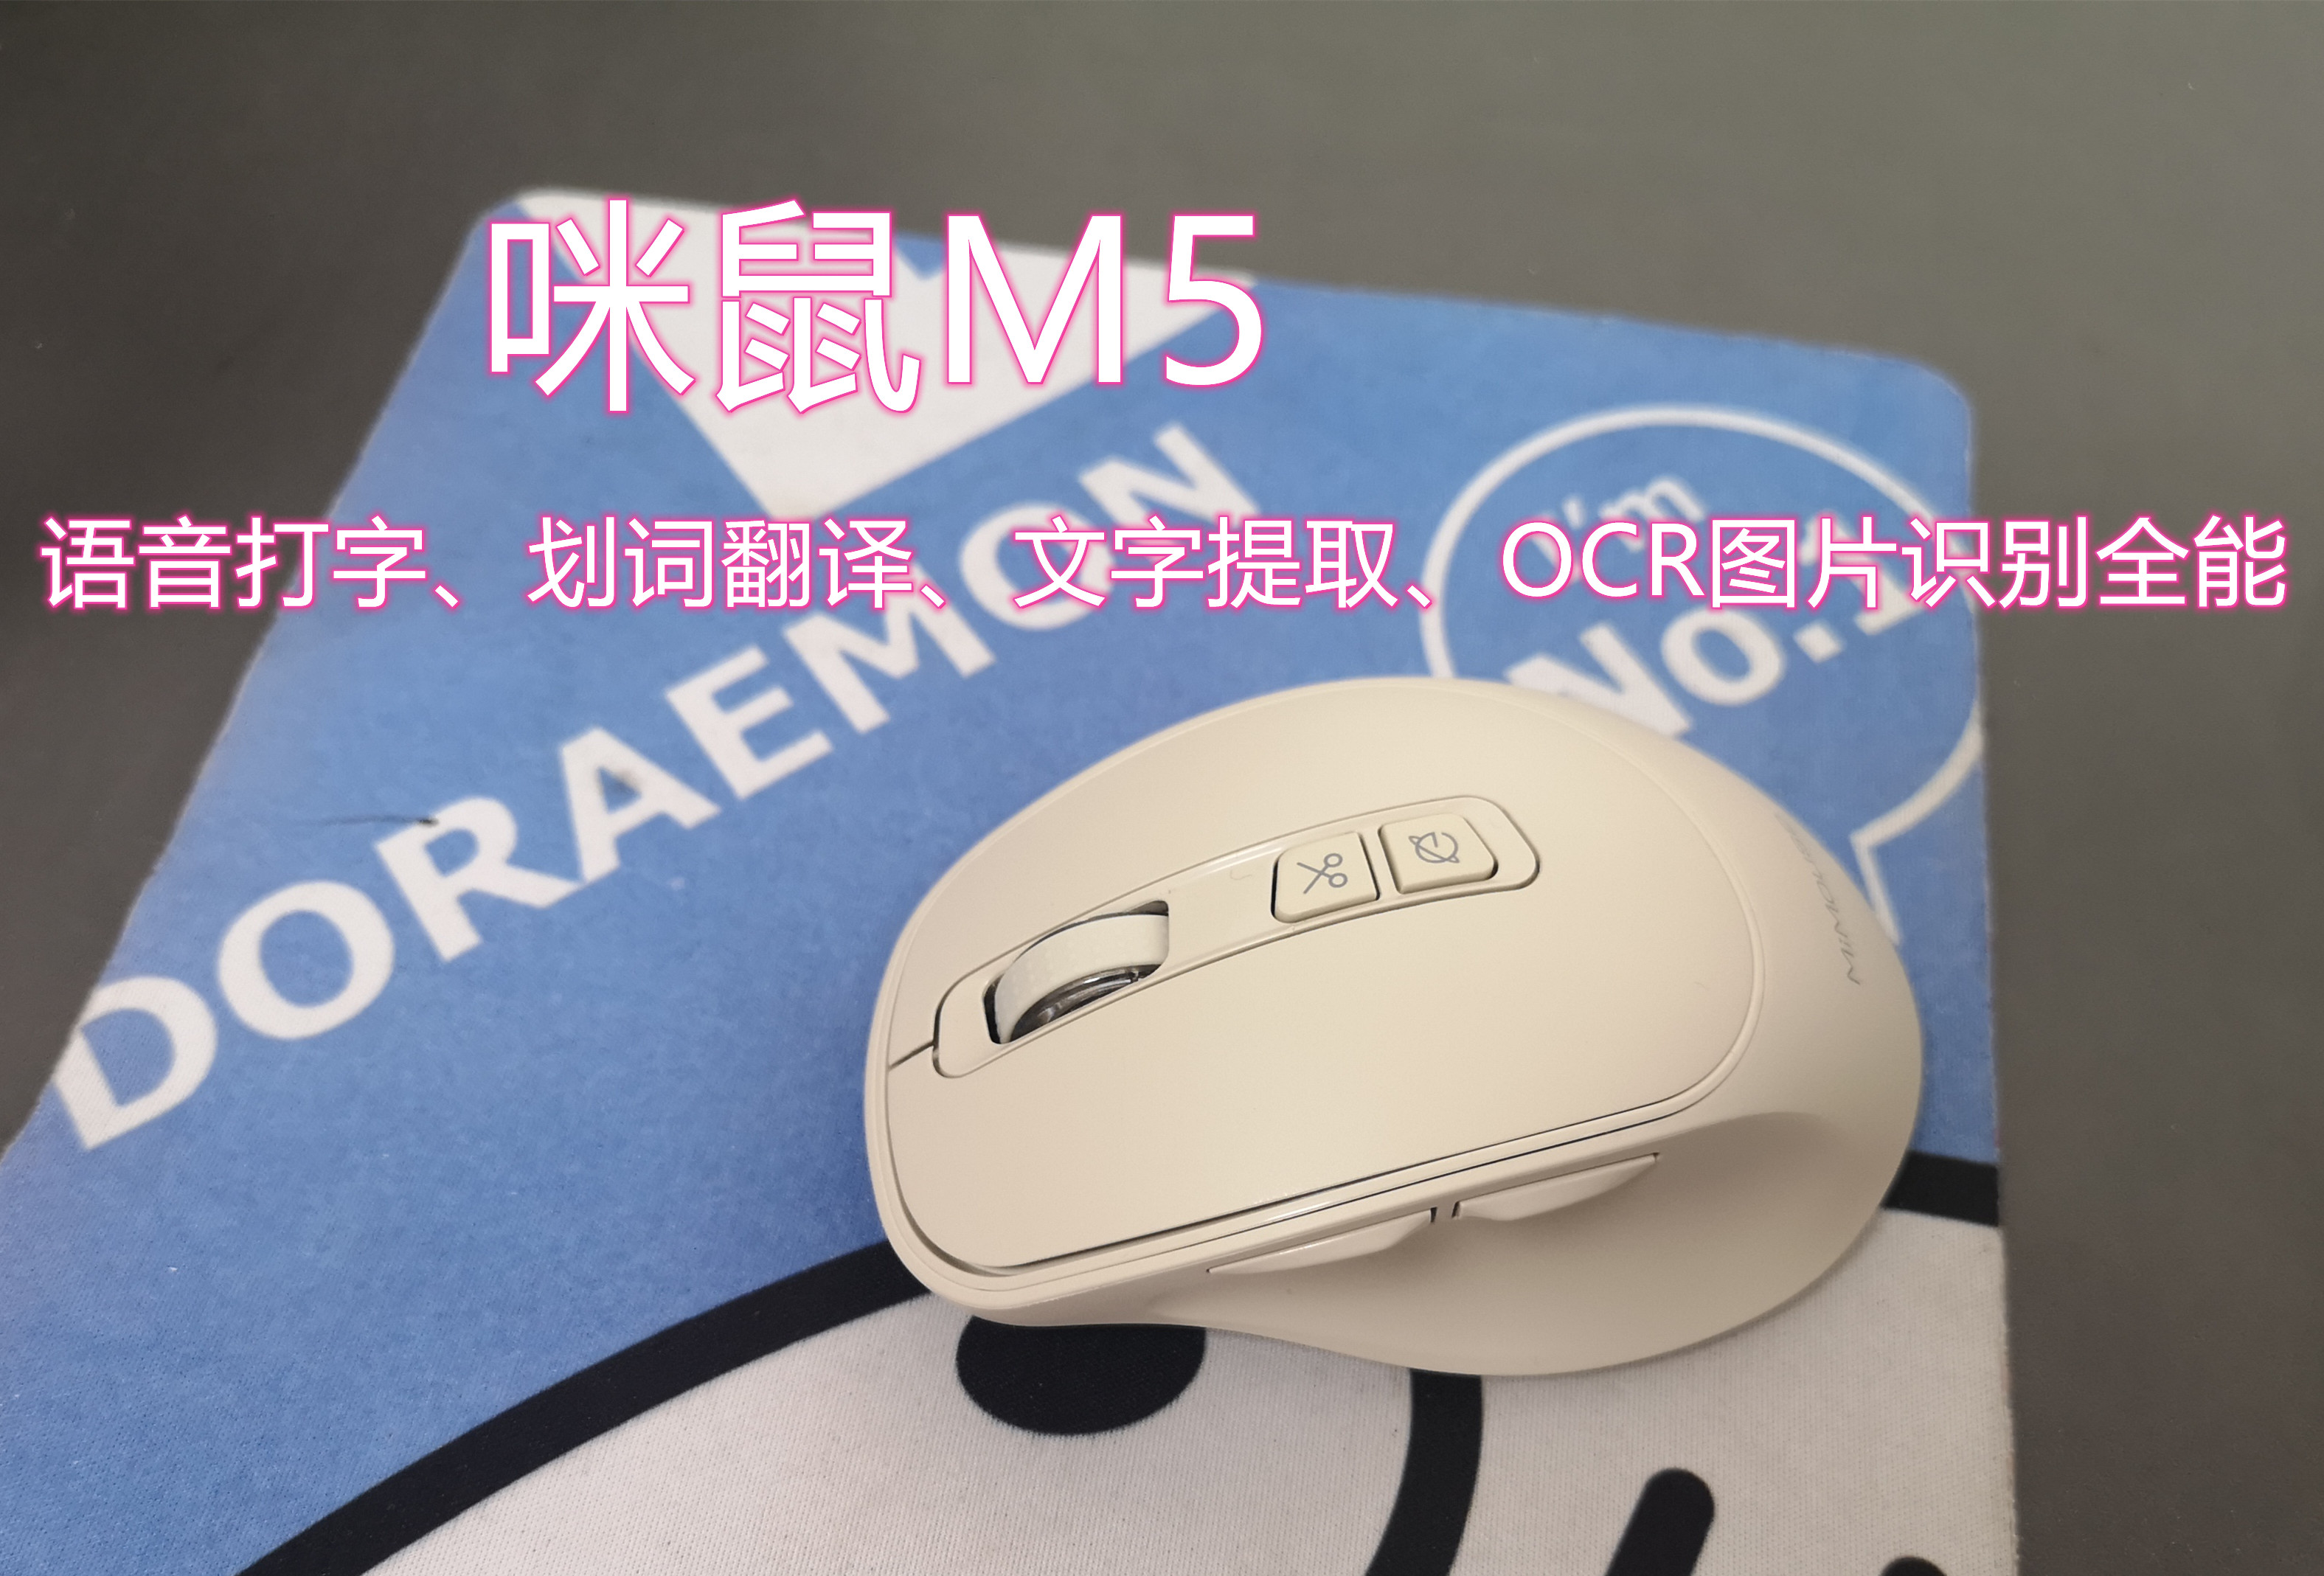 咪鼠M5能语音打字、划词翻译、文字提取，还能…….